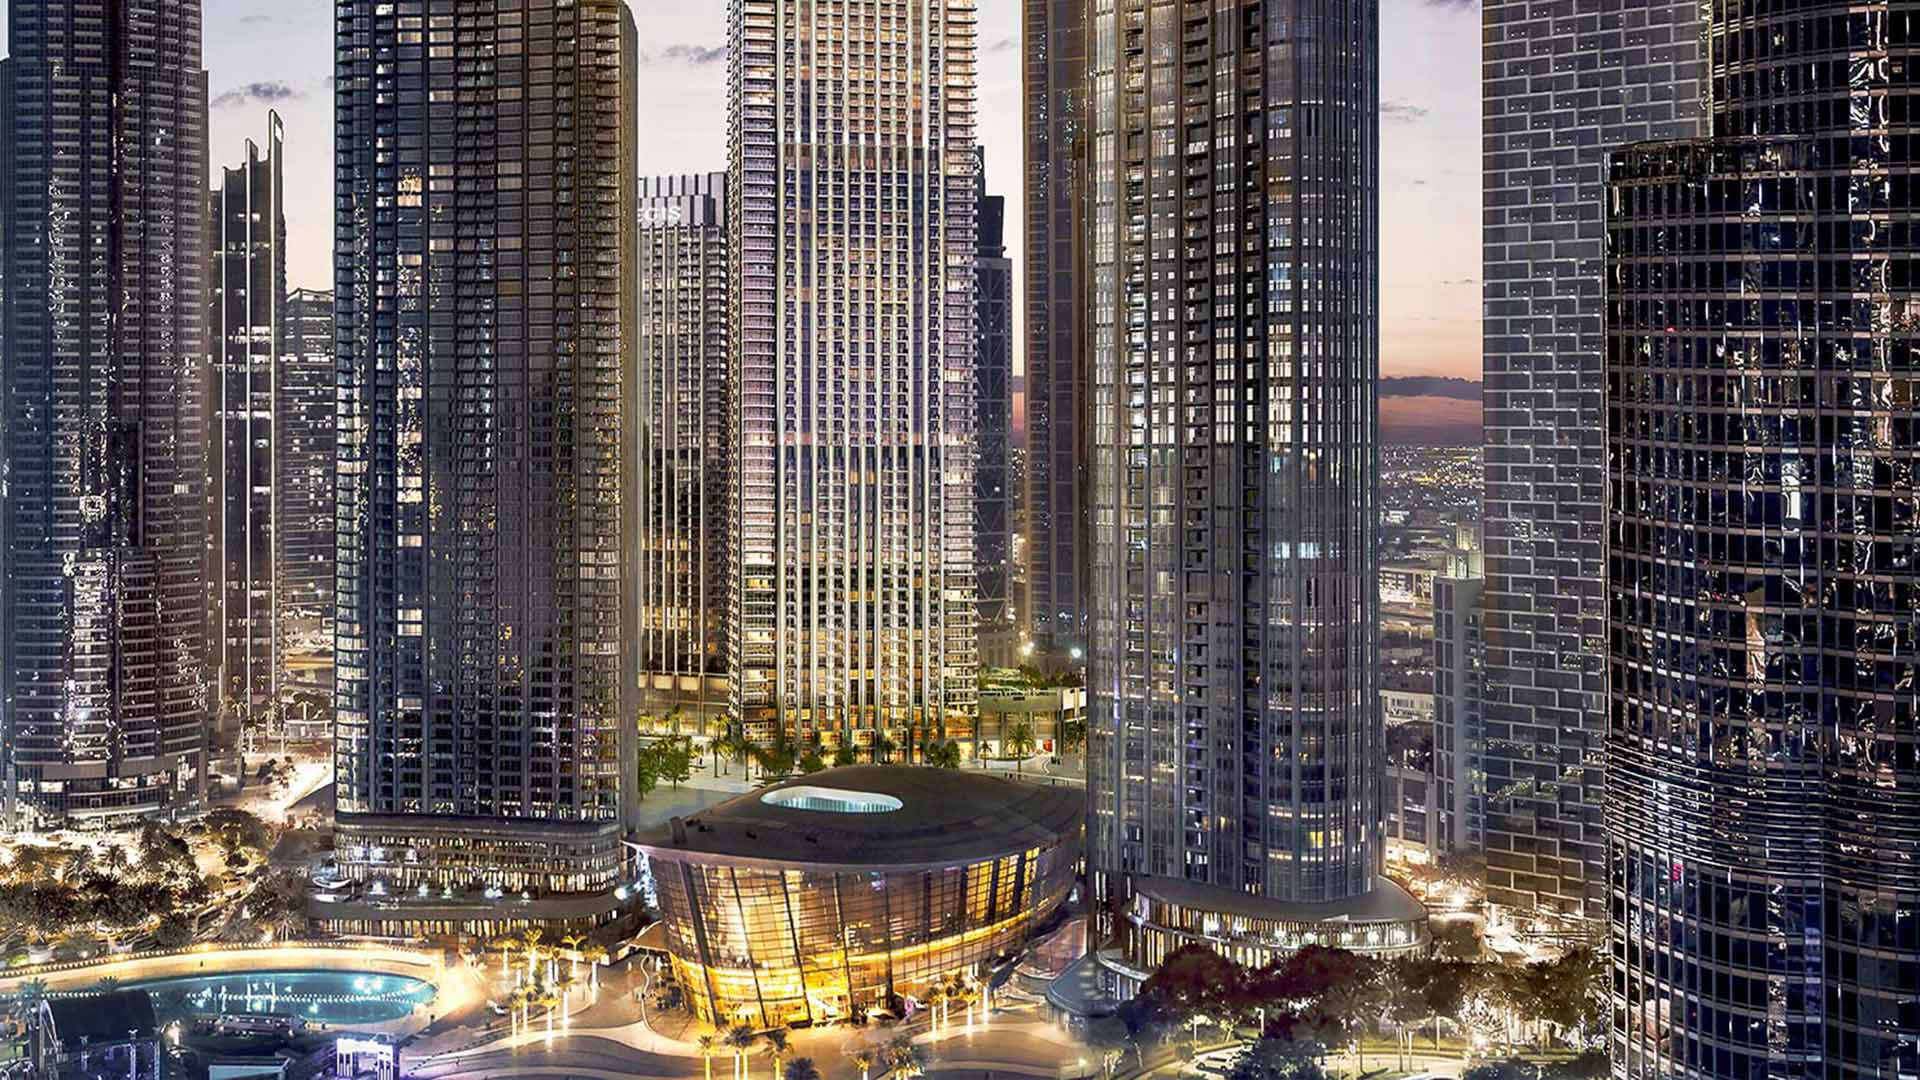 ST.REGIS RESIDENCES by Emaar Properties in Downtown Dubai, Dubai, UAE - 5